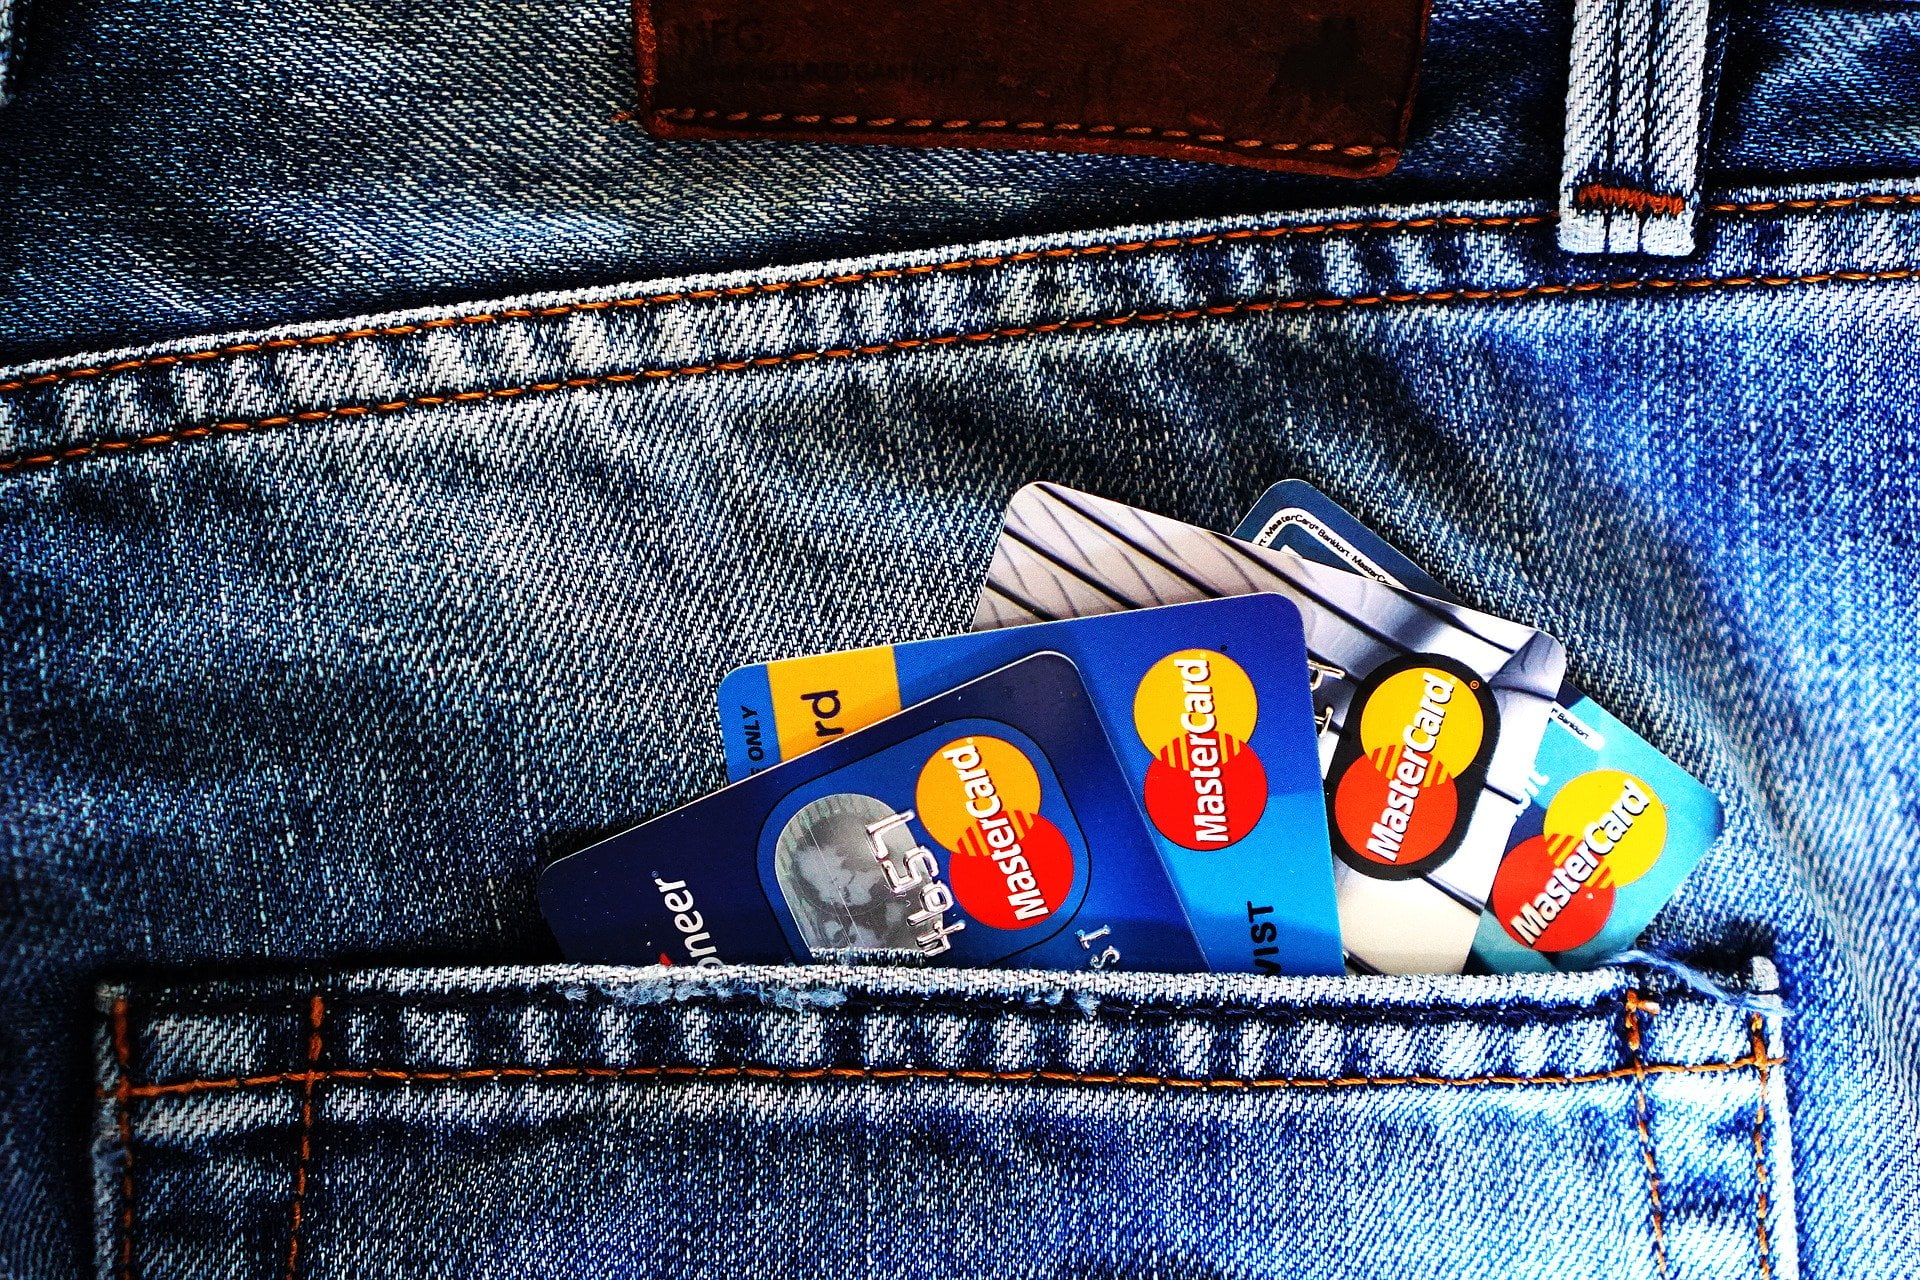 Organização das contas domésticas: Seu cartão de crédito pode ser um aliado